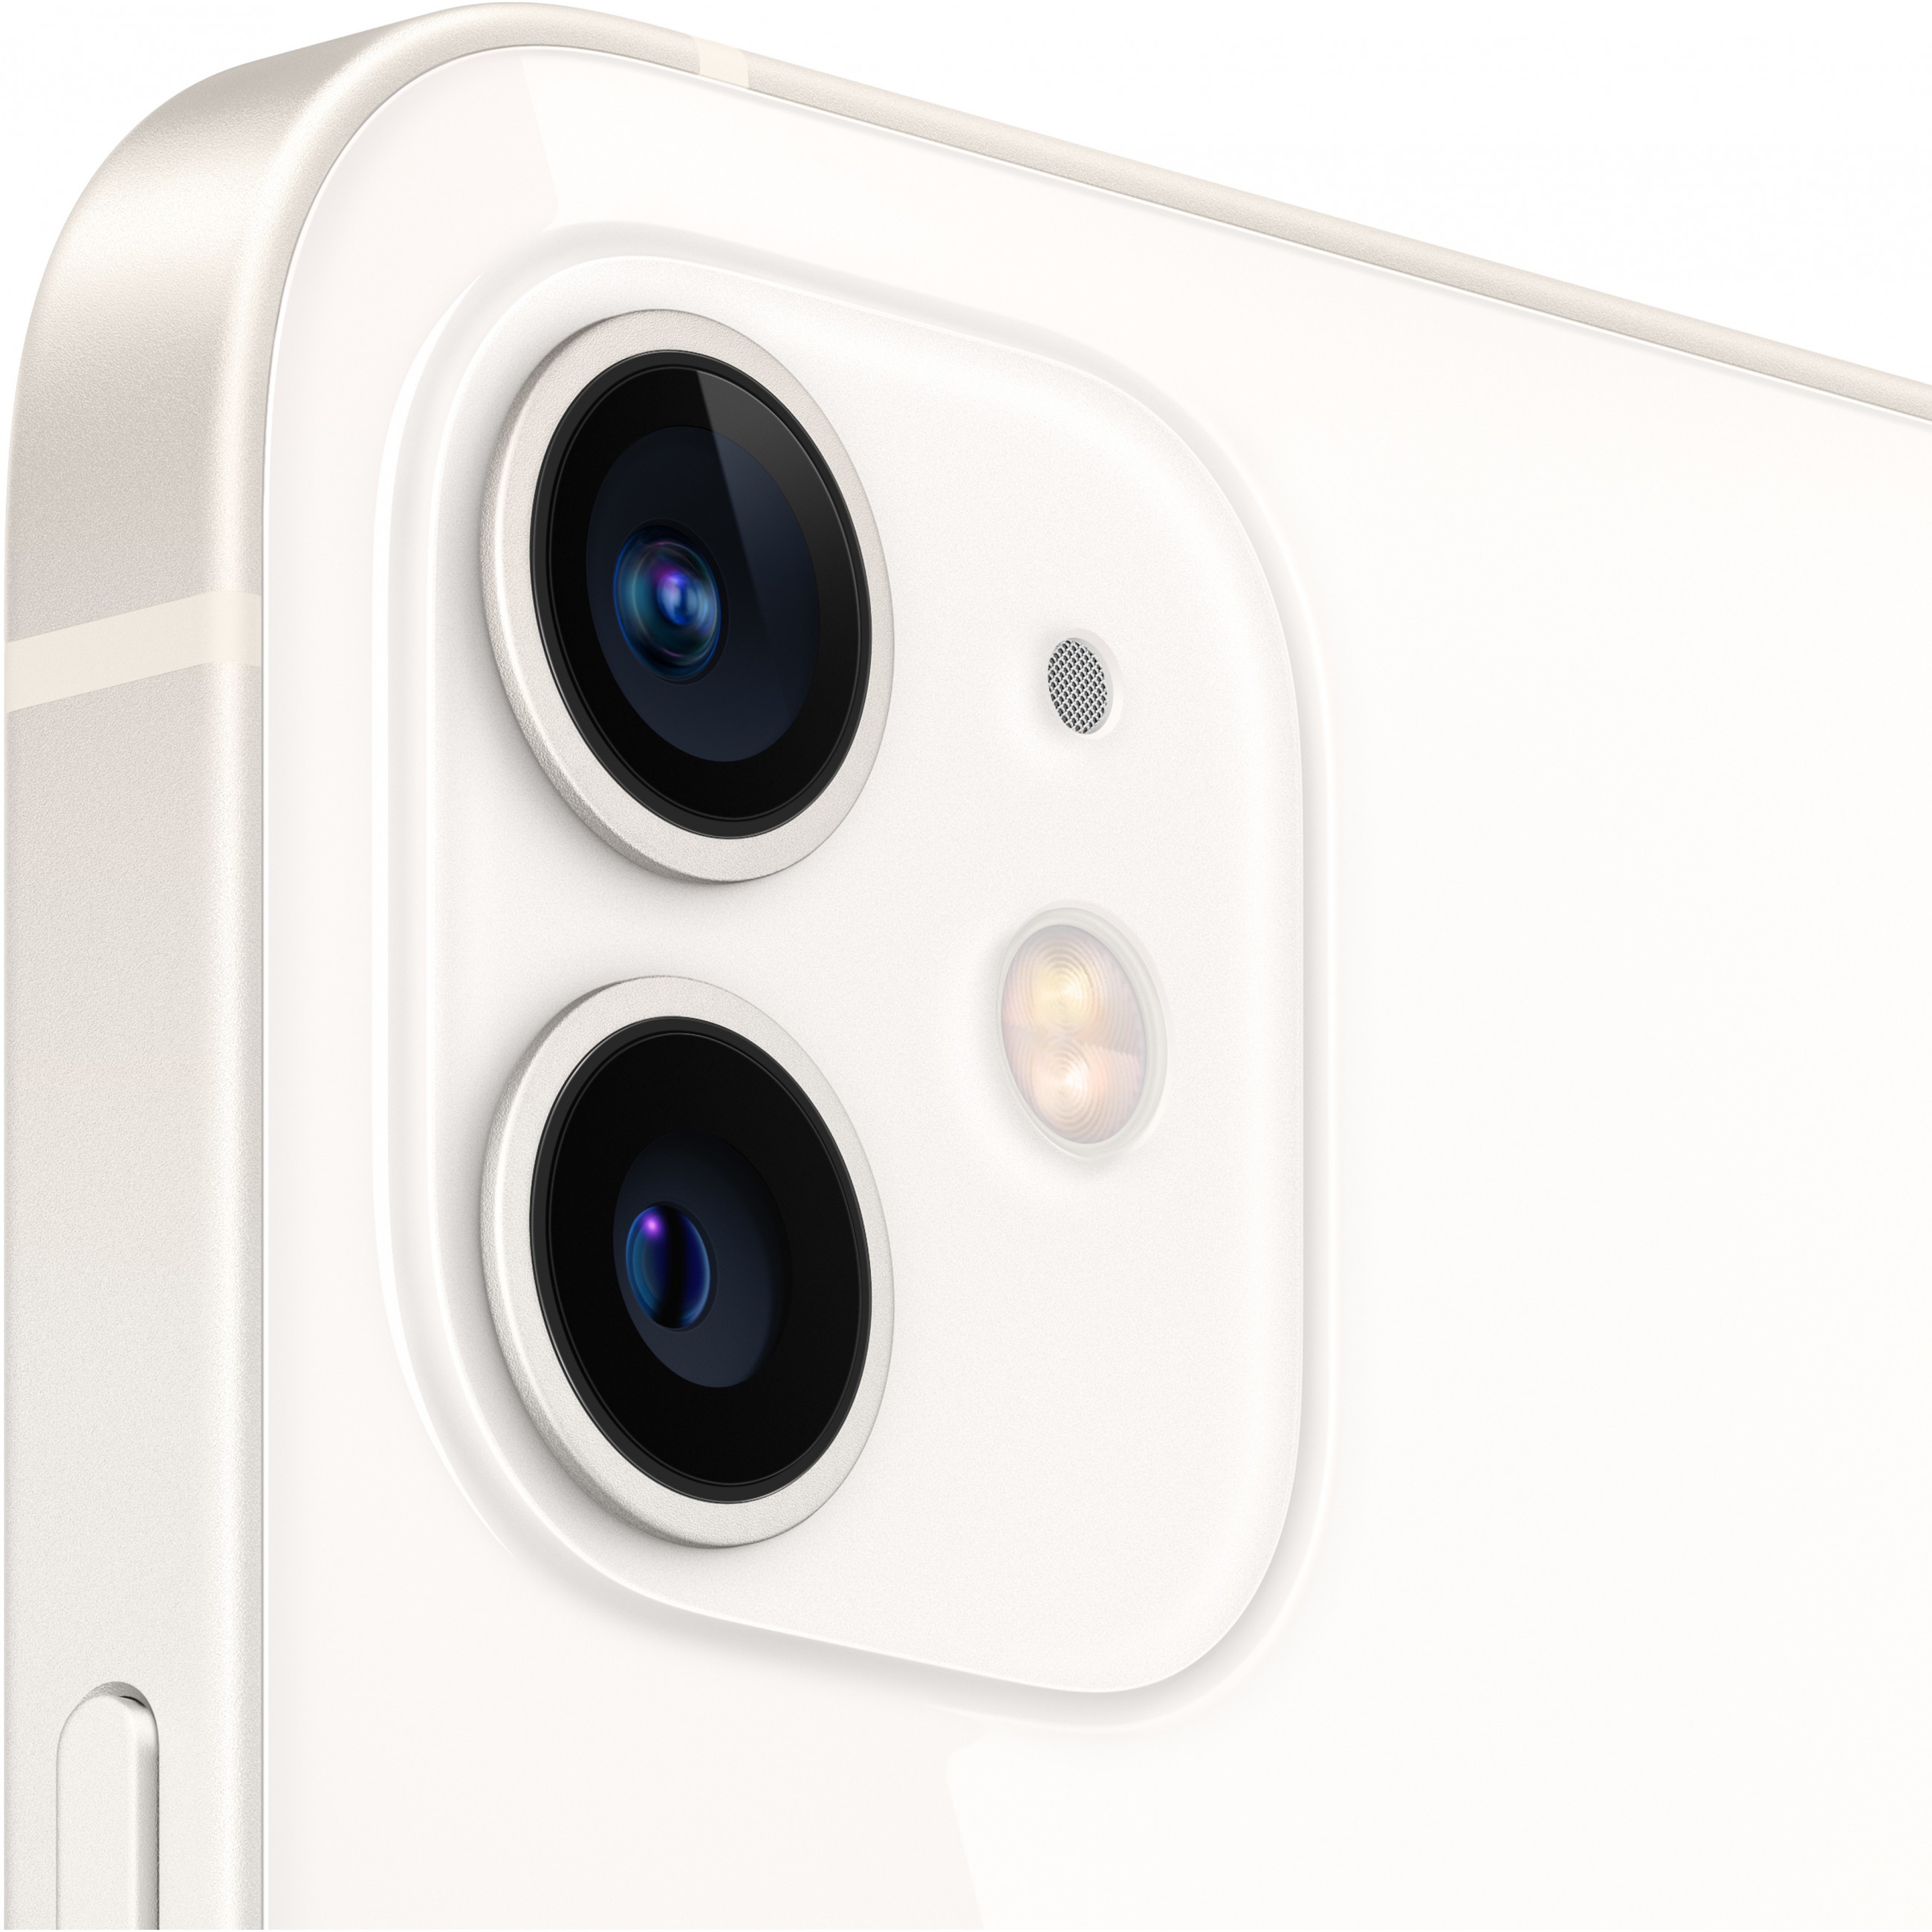 Apple iPhone 12 15,5 cm (6.1 Zoll) Dual-SIM iOS 14 5G 128 GB Weiß